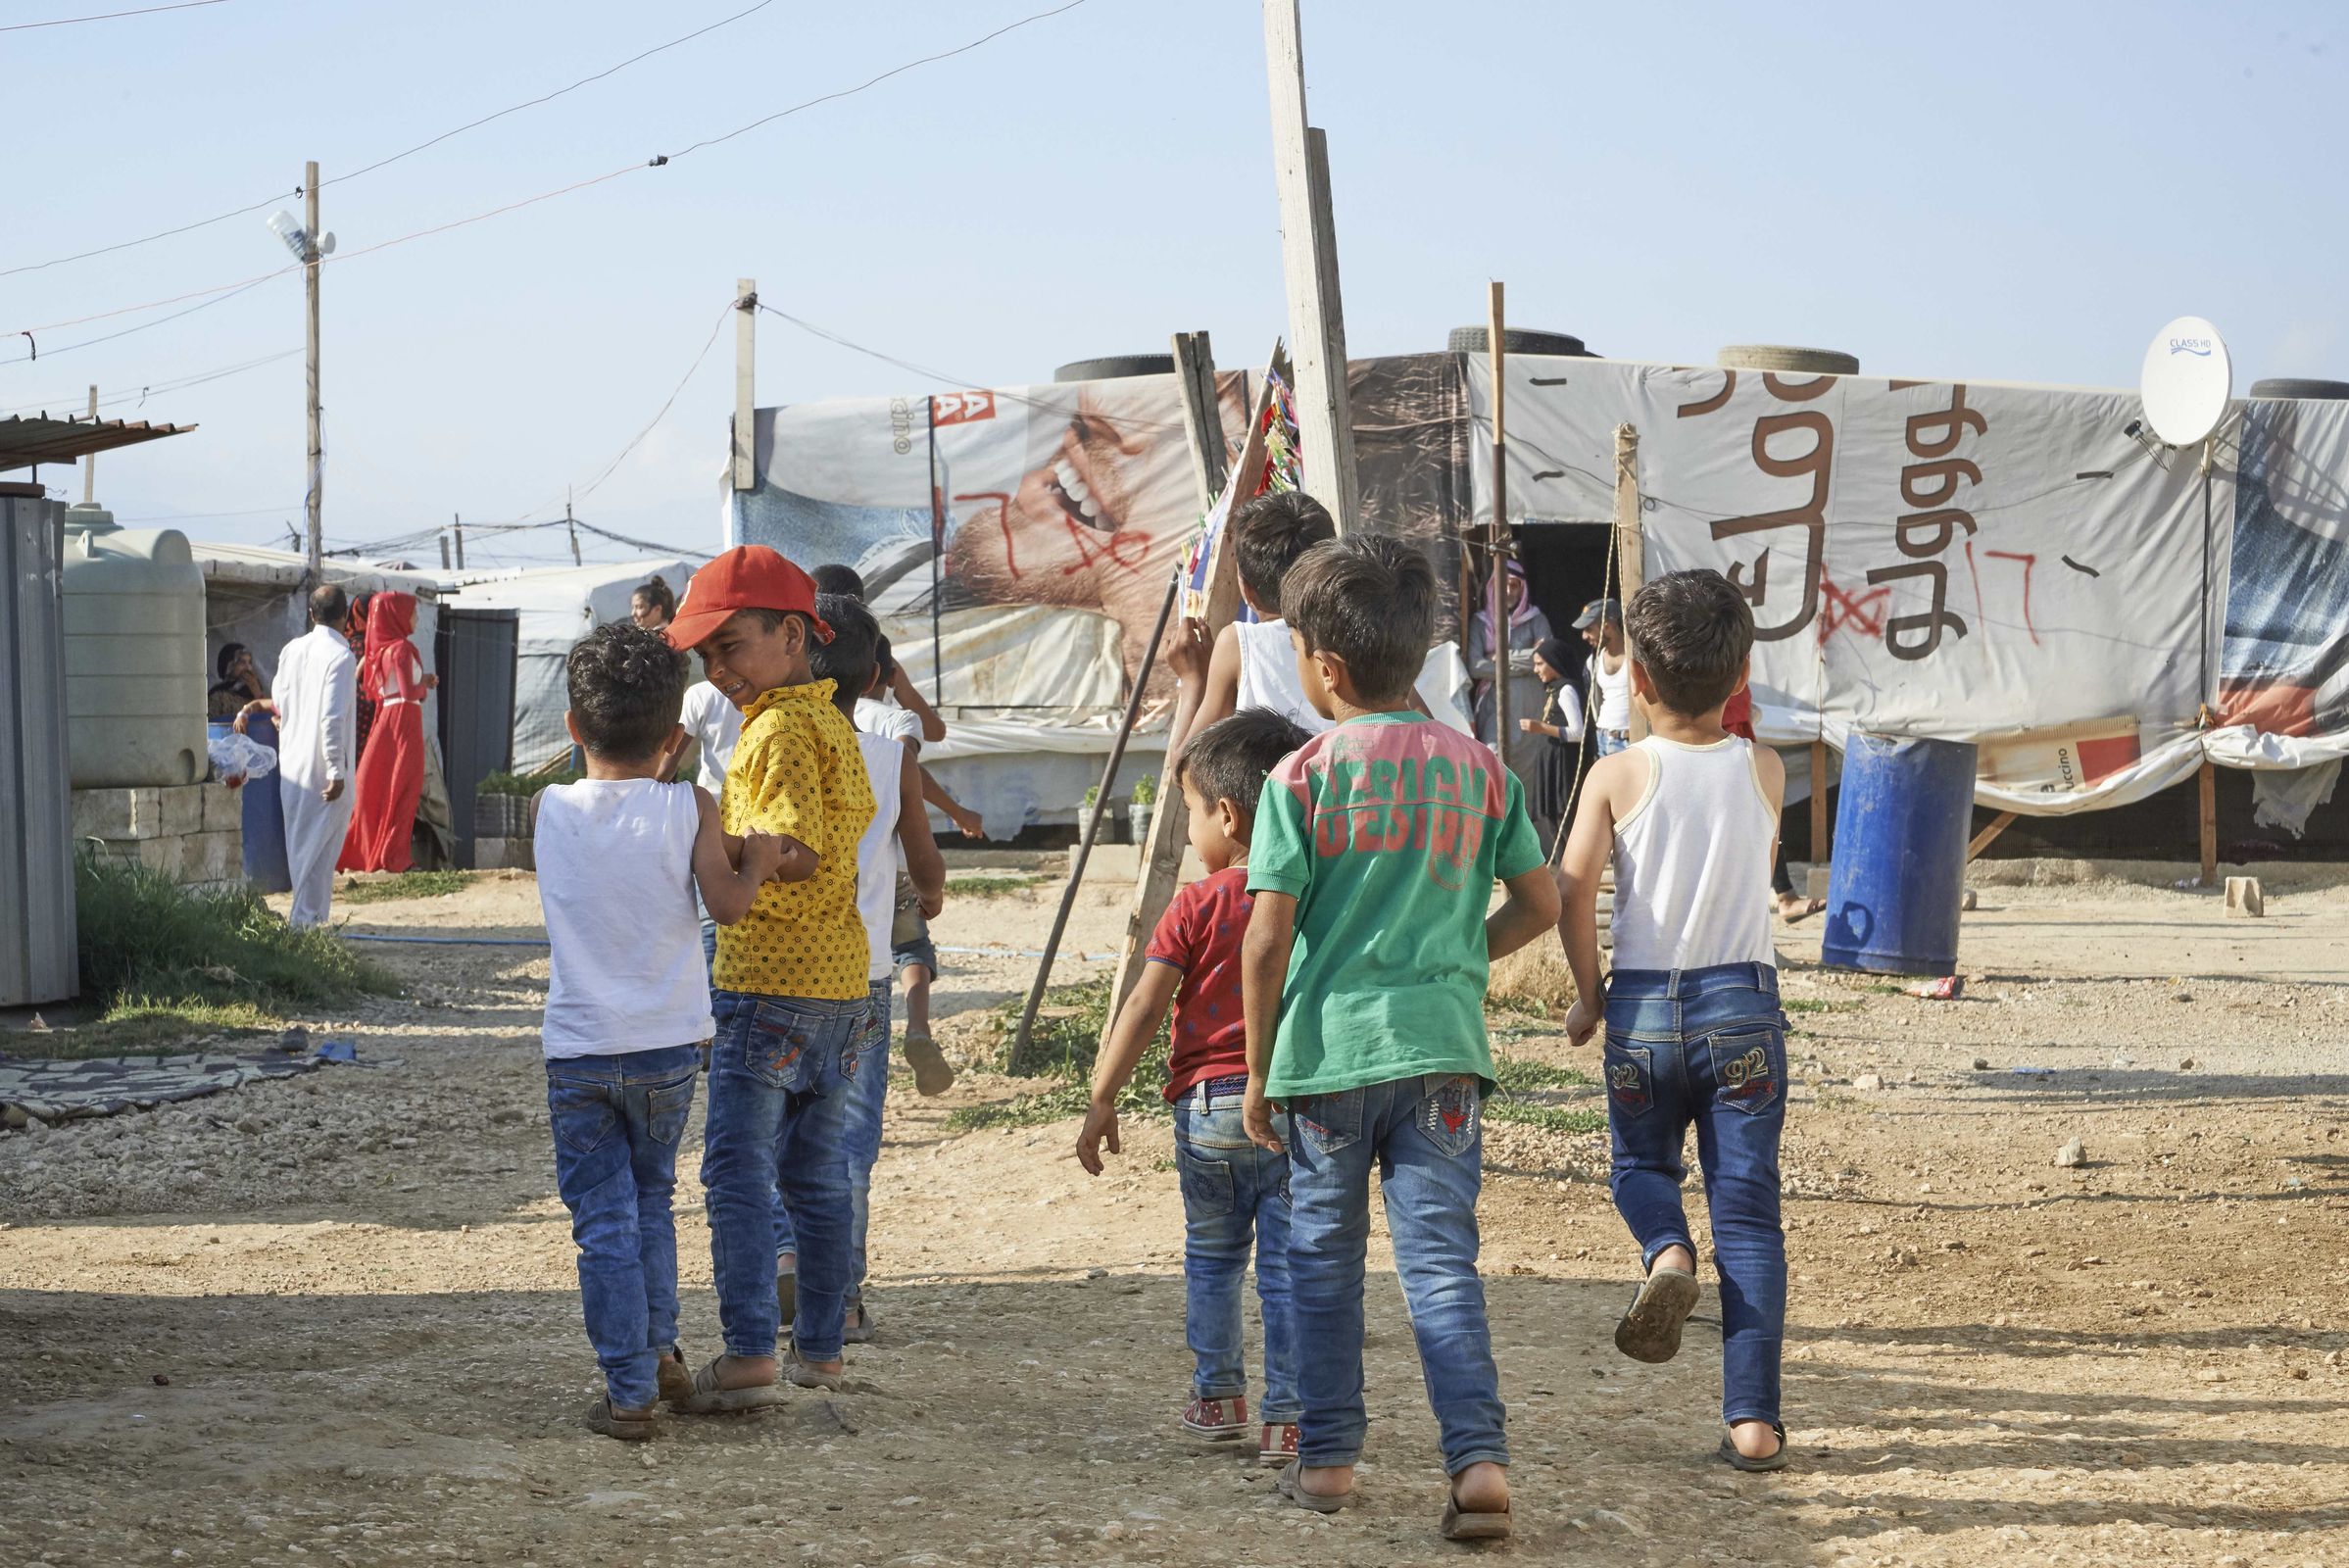 Reportage Libanon; Foto: Kinder in einem Flüchtlingslager (Quelle: Ulrich Gernhardt / Kindernothilfe)